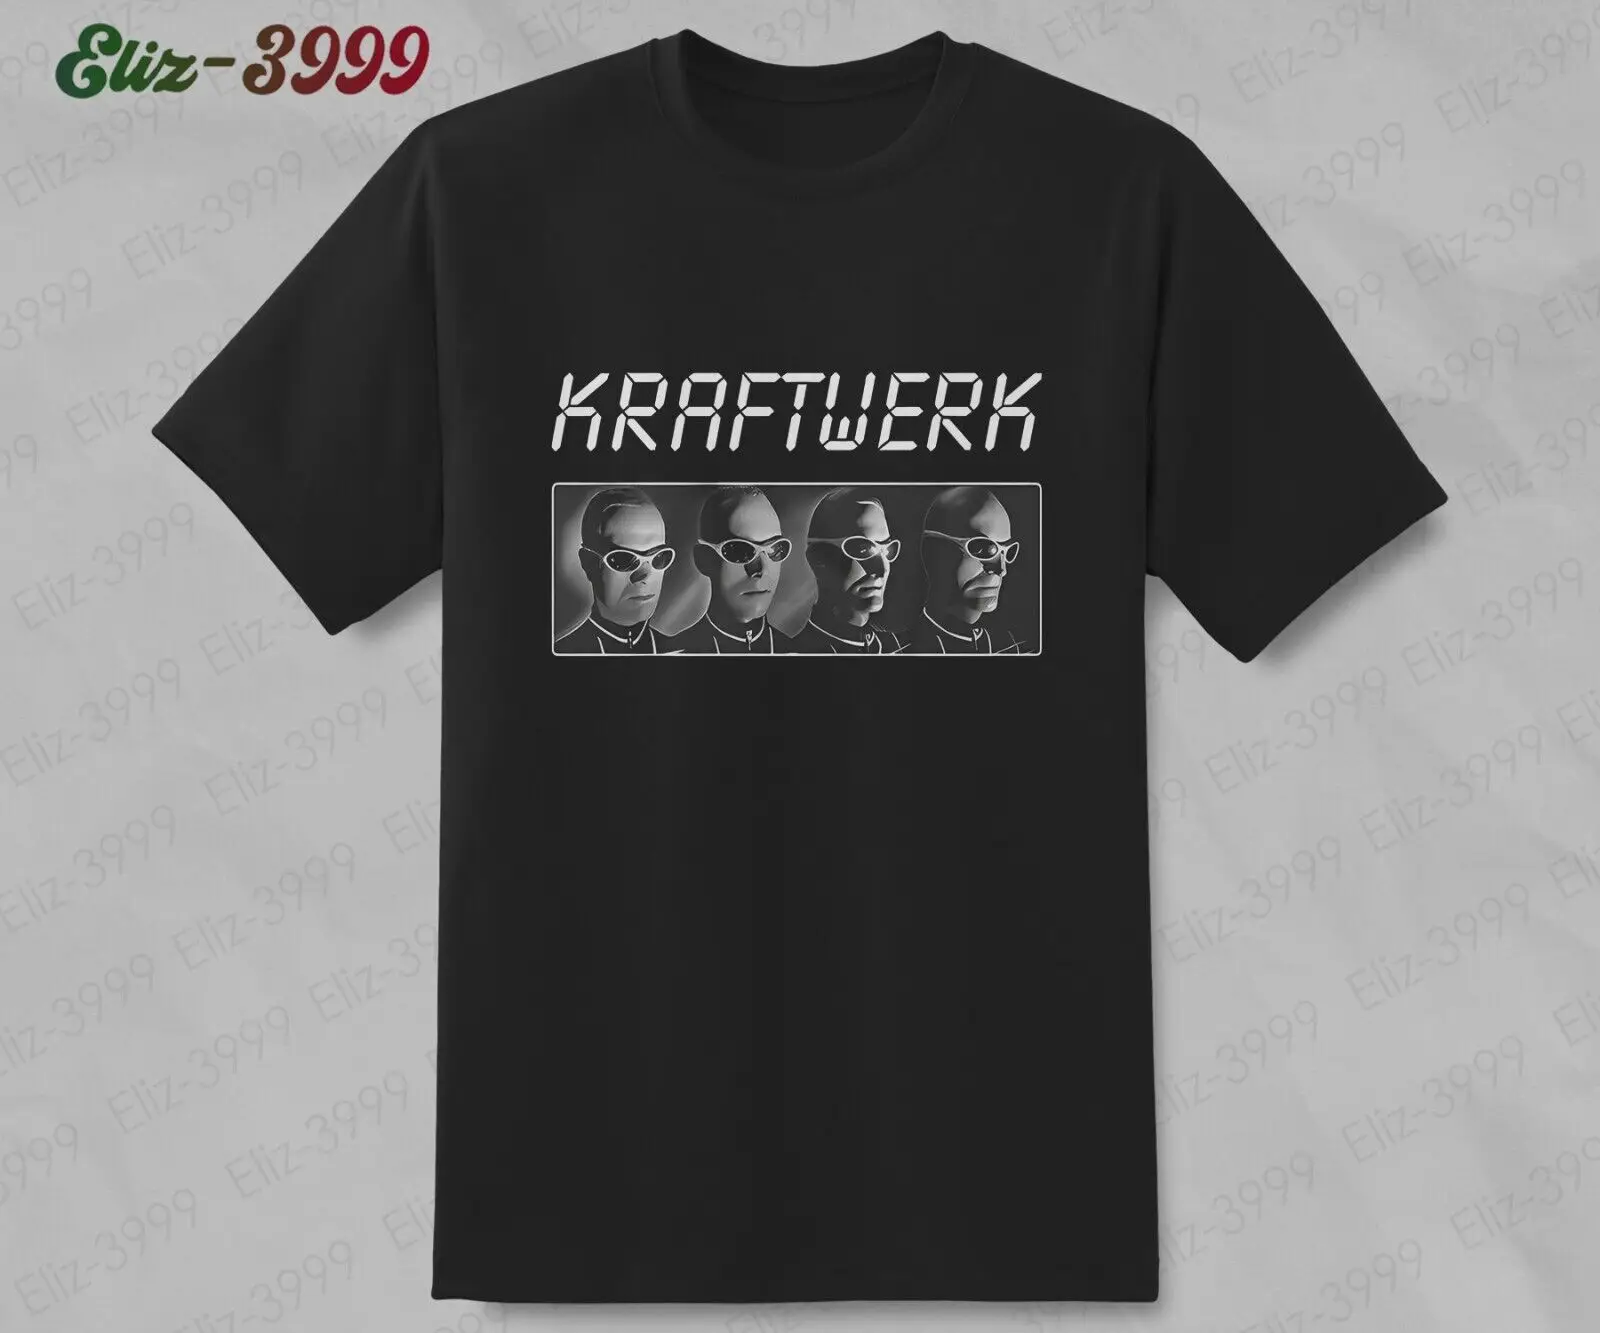 Албуми Kraftwerk, класическа електронна група, реколта тениска на Man Machine с Ральфом Хаттером